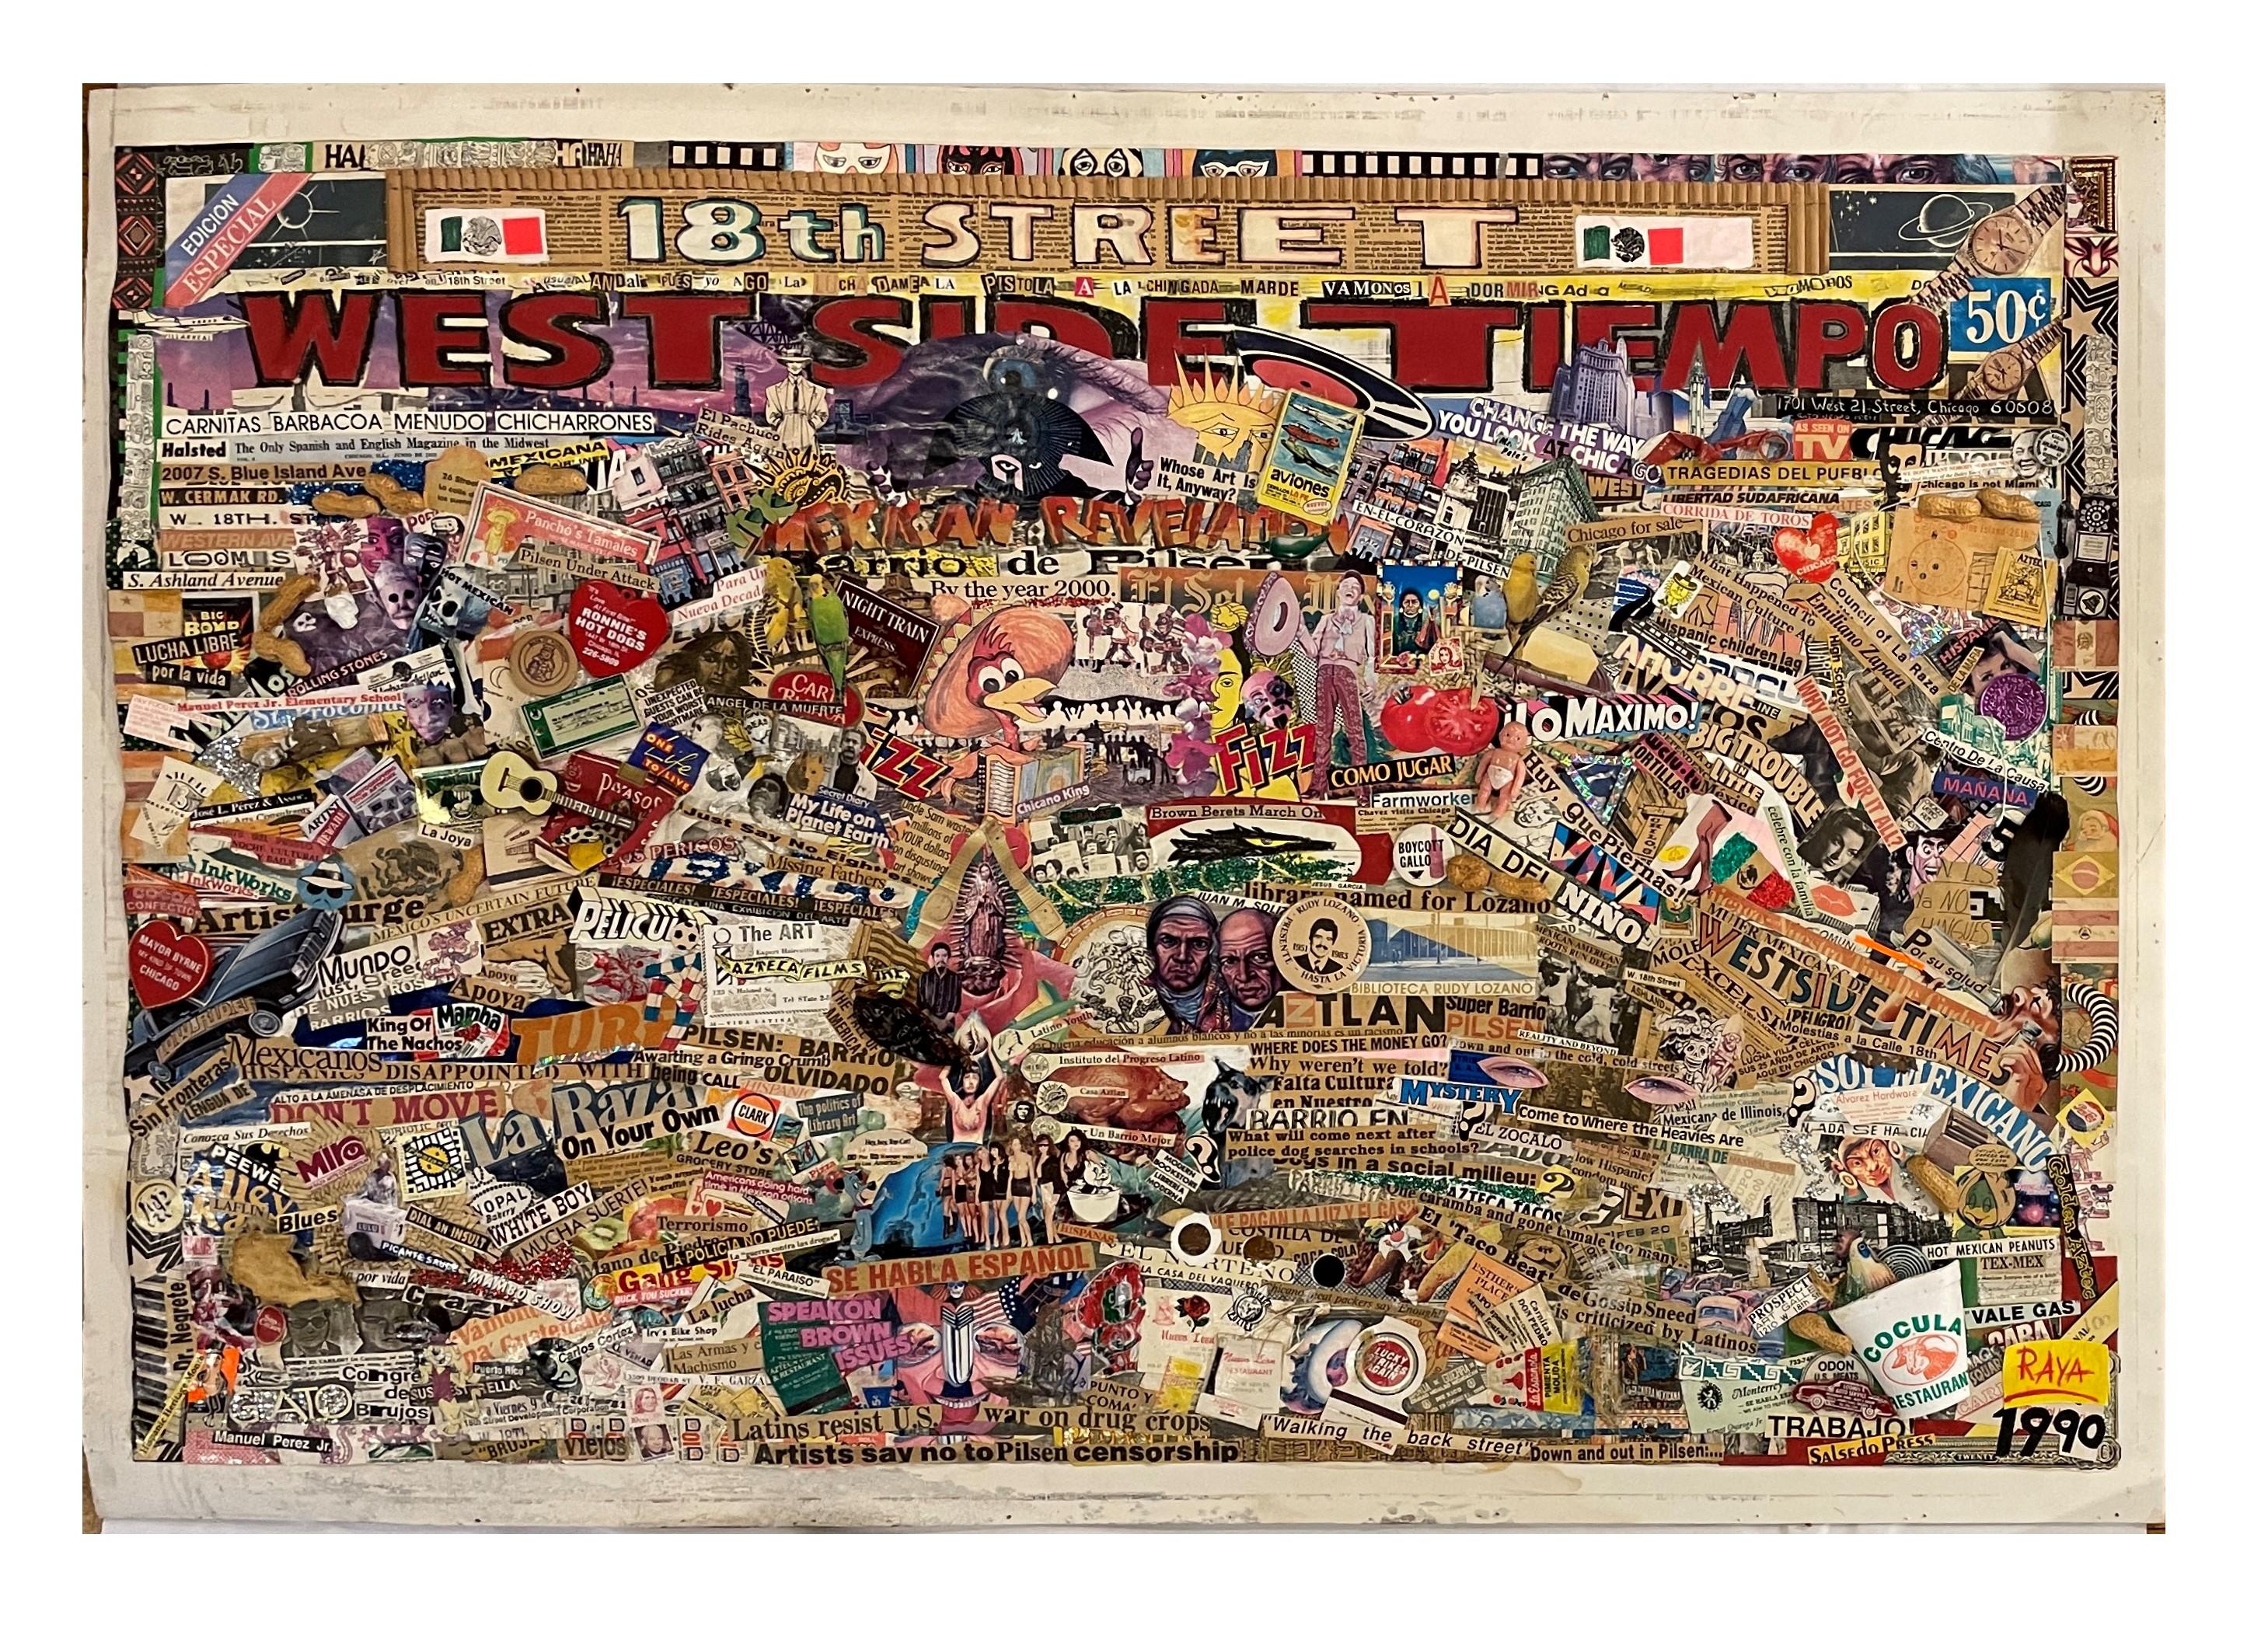 Ce collage tridimensionnel raconte les épreuves et les tribulations de la communauté hispanique du West Side de Chicago dans laquelle l'artiste a résidé pendant de nombreuses années.  Des objets éphémères et des articles de fantaisie trouvés